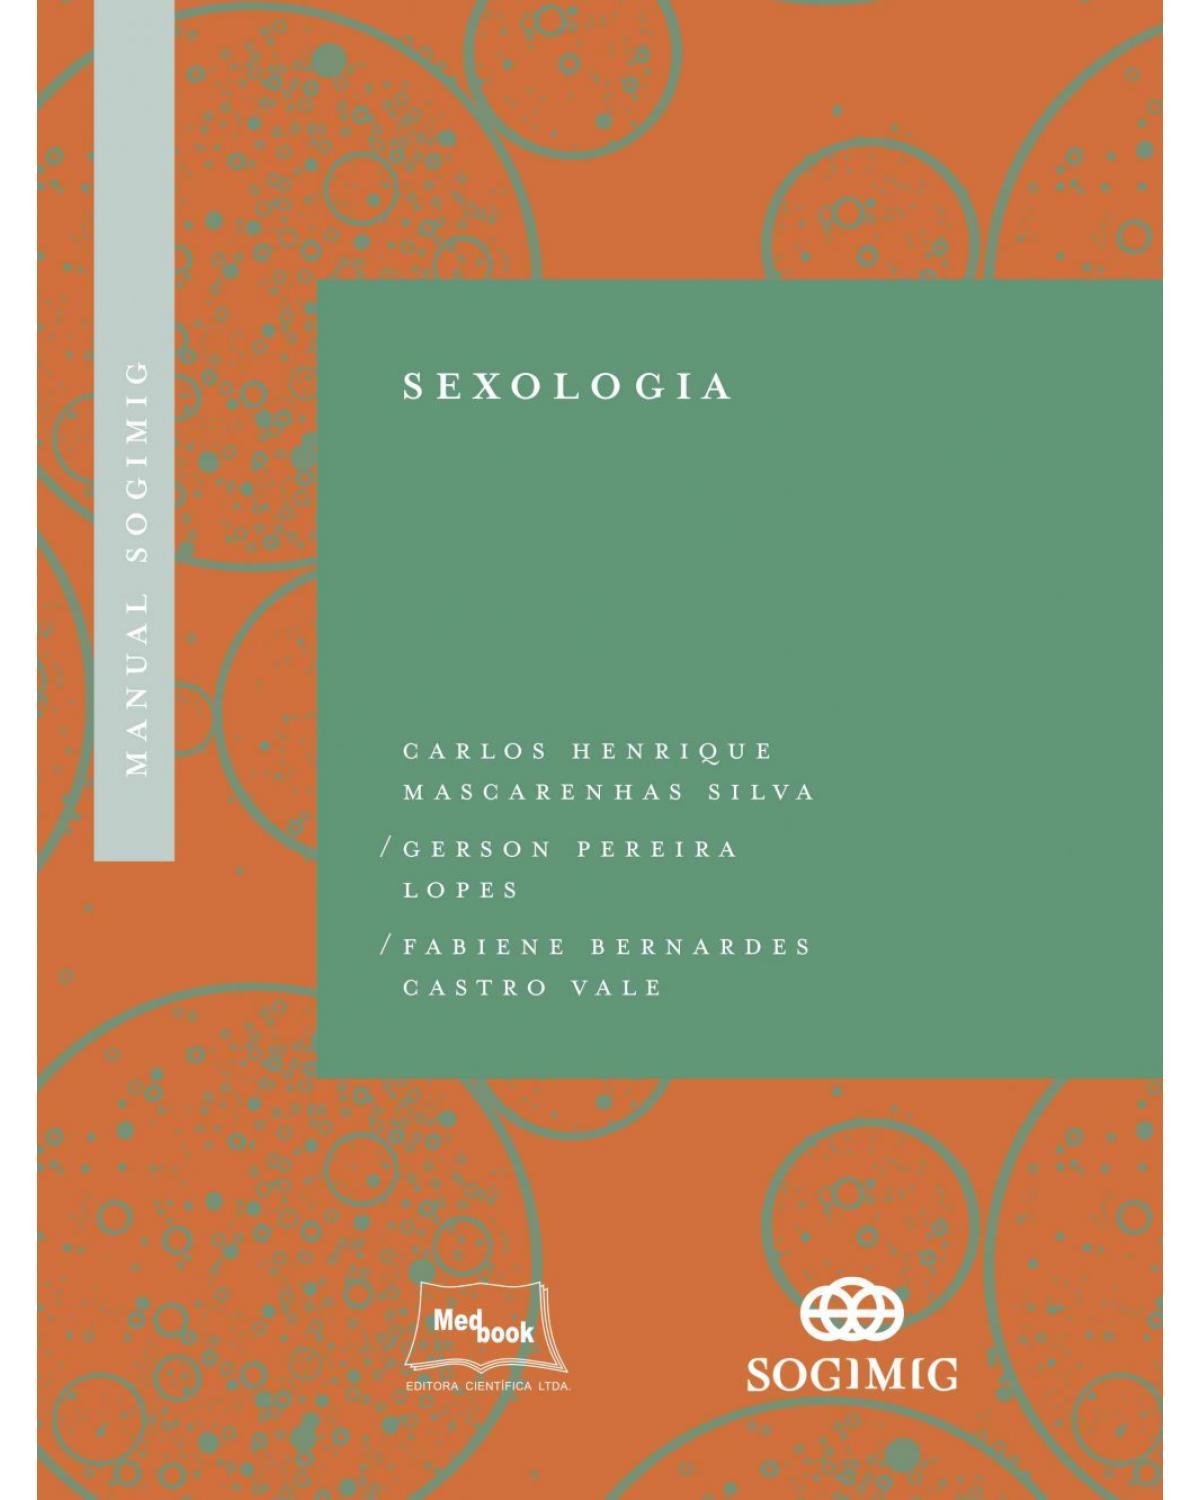 Manual SOGIMIG - Sexologia - 1ª Edição | 2019